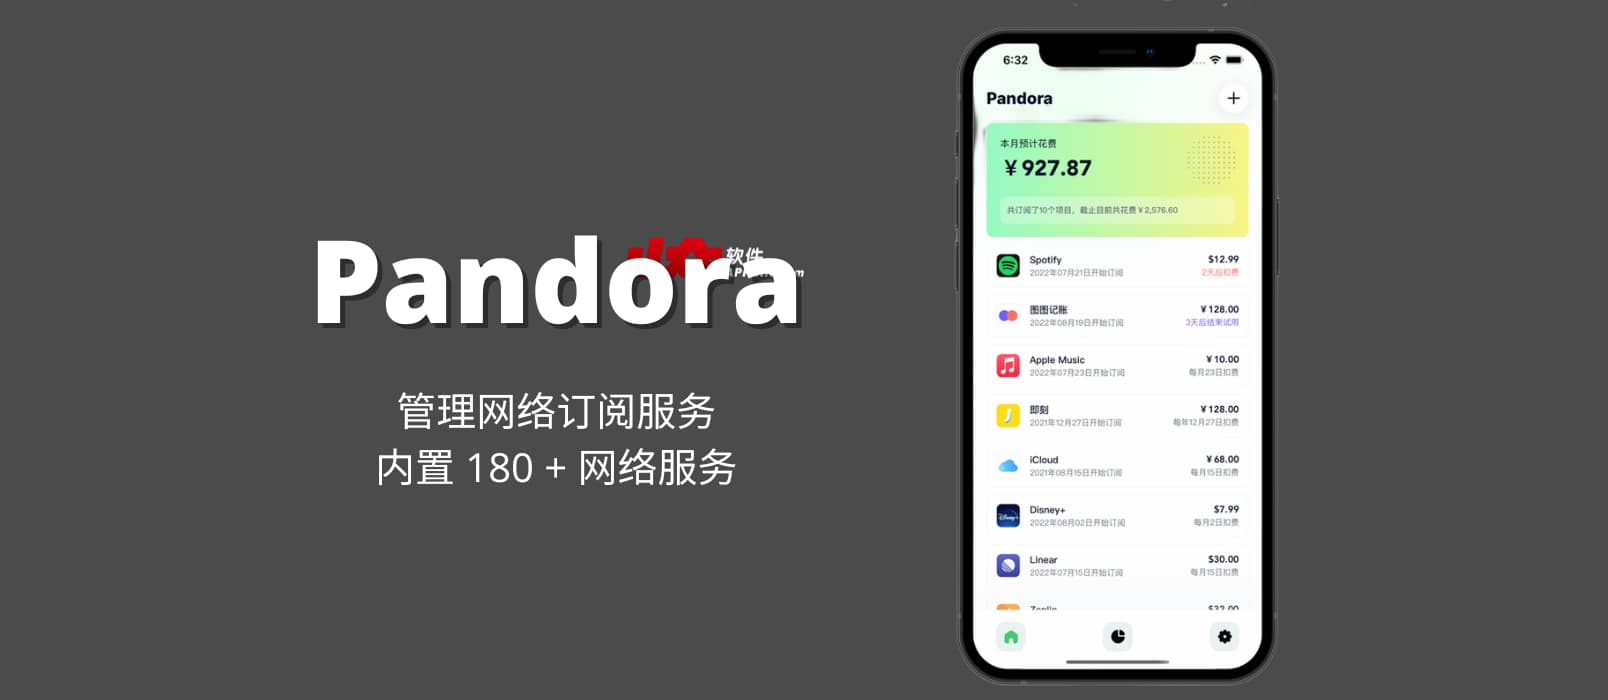 Pandora - 管理网络订阅服务，内置 180 + 网络服务[iPhone/iPad]